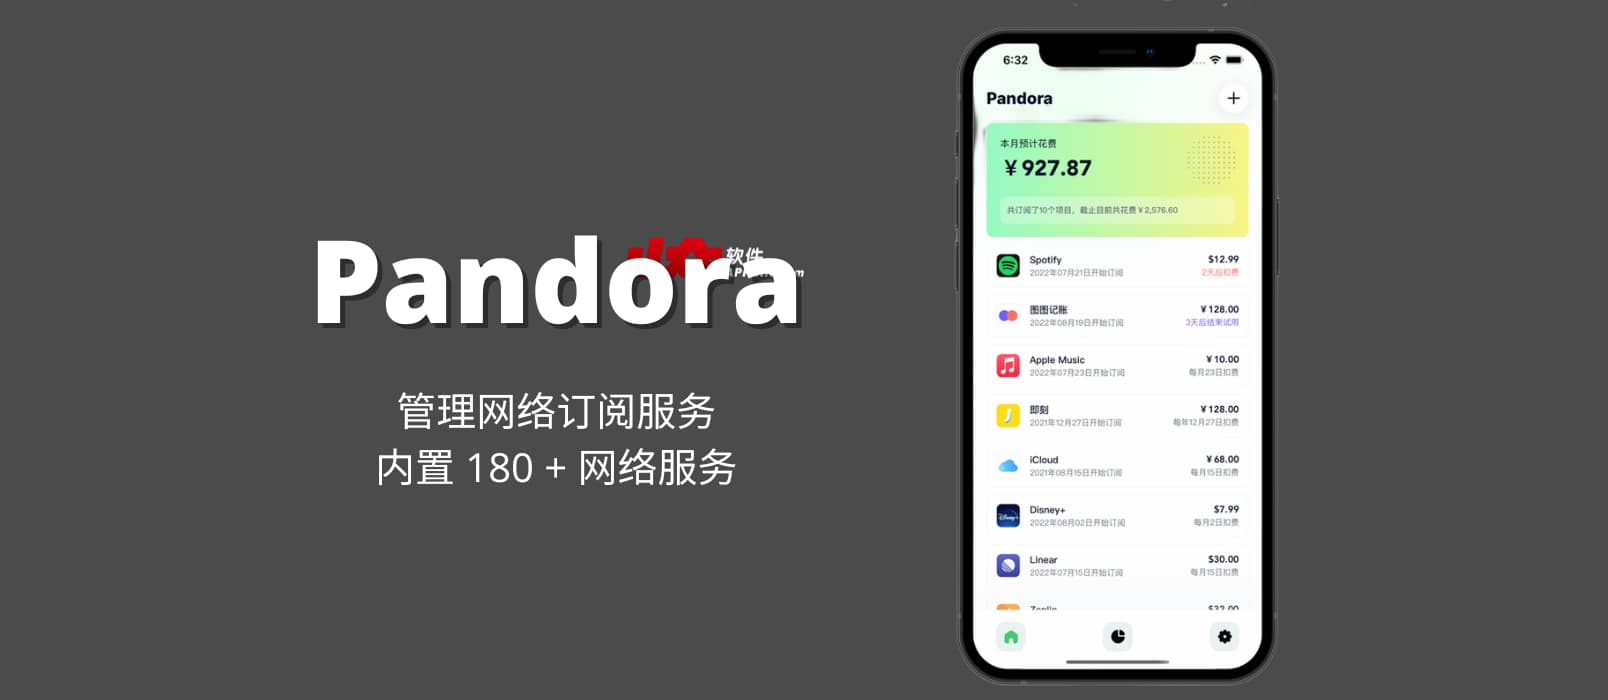 Pandora - 管理网络订阅服务，内置 180 + 网络服务[iPhone/iPad]